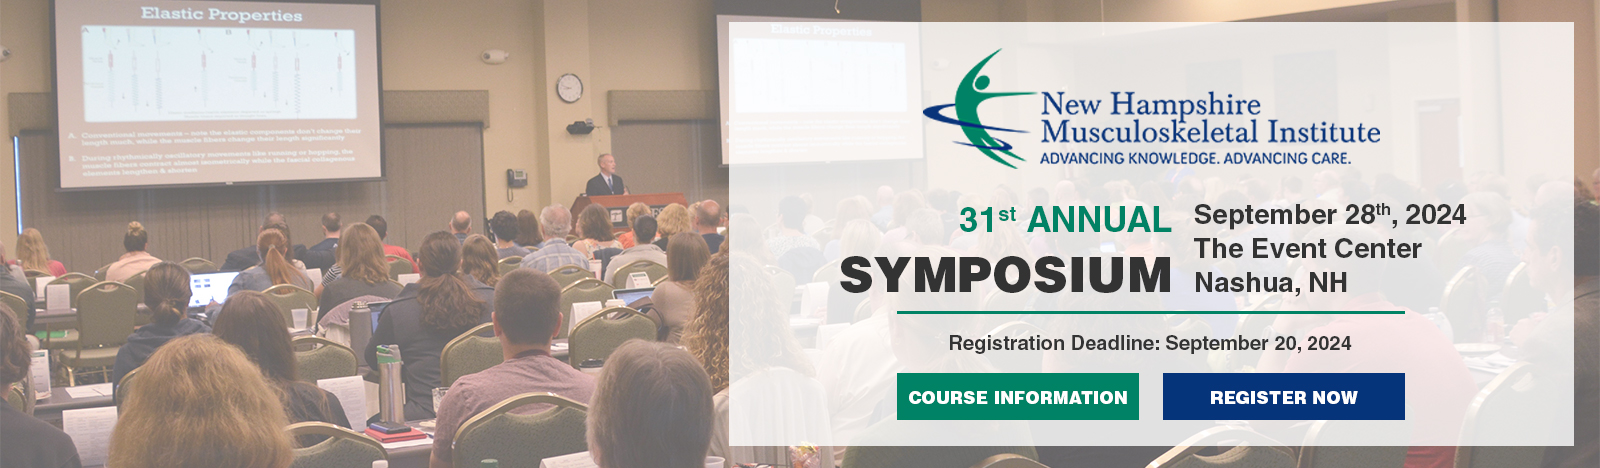 31st Annual Symposium